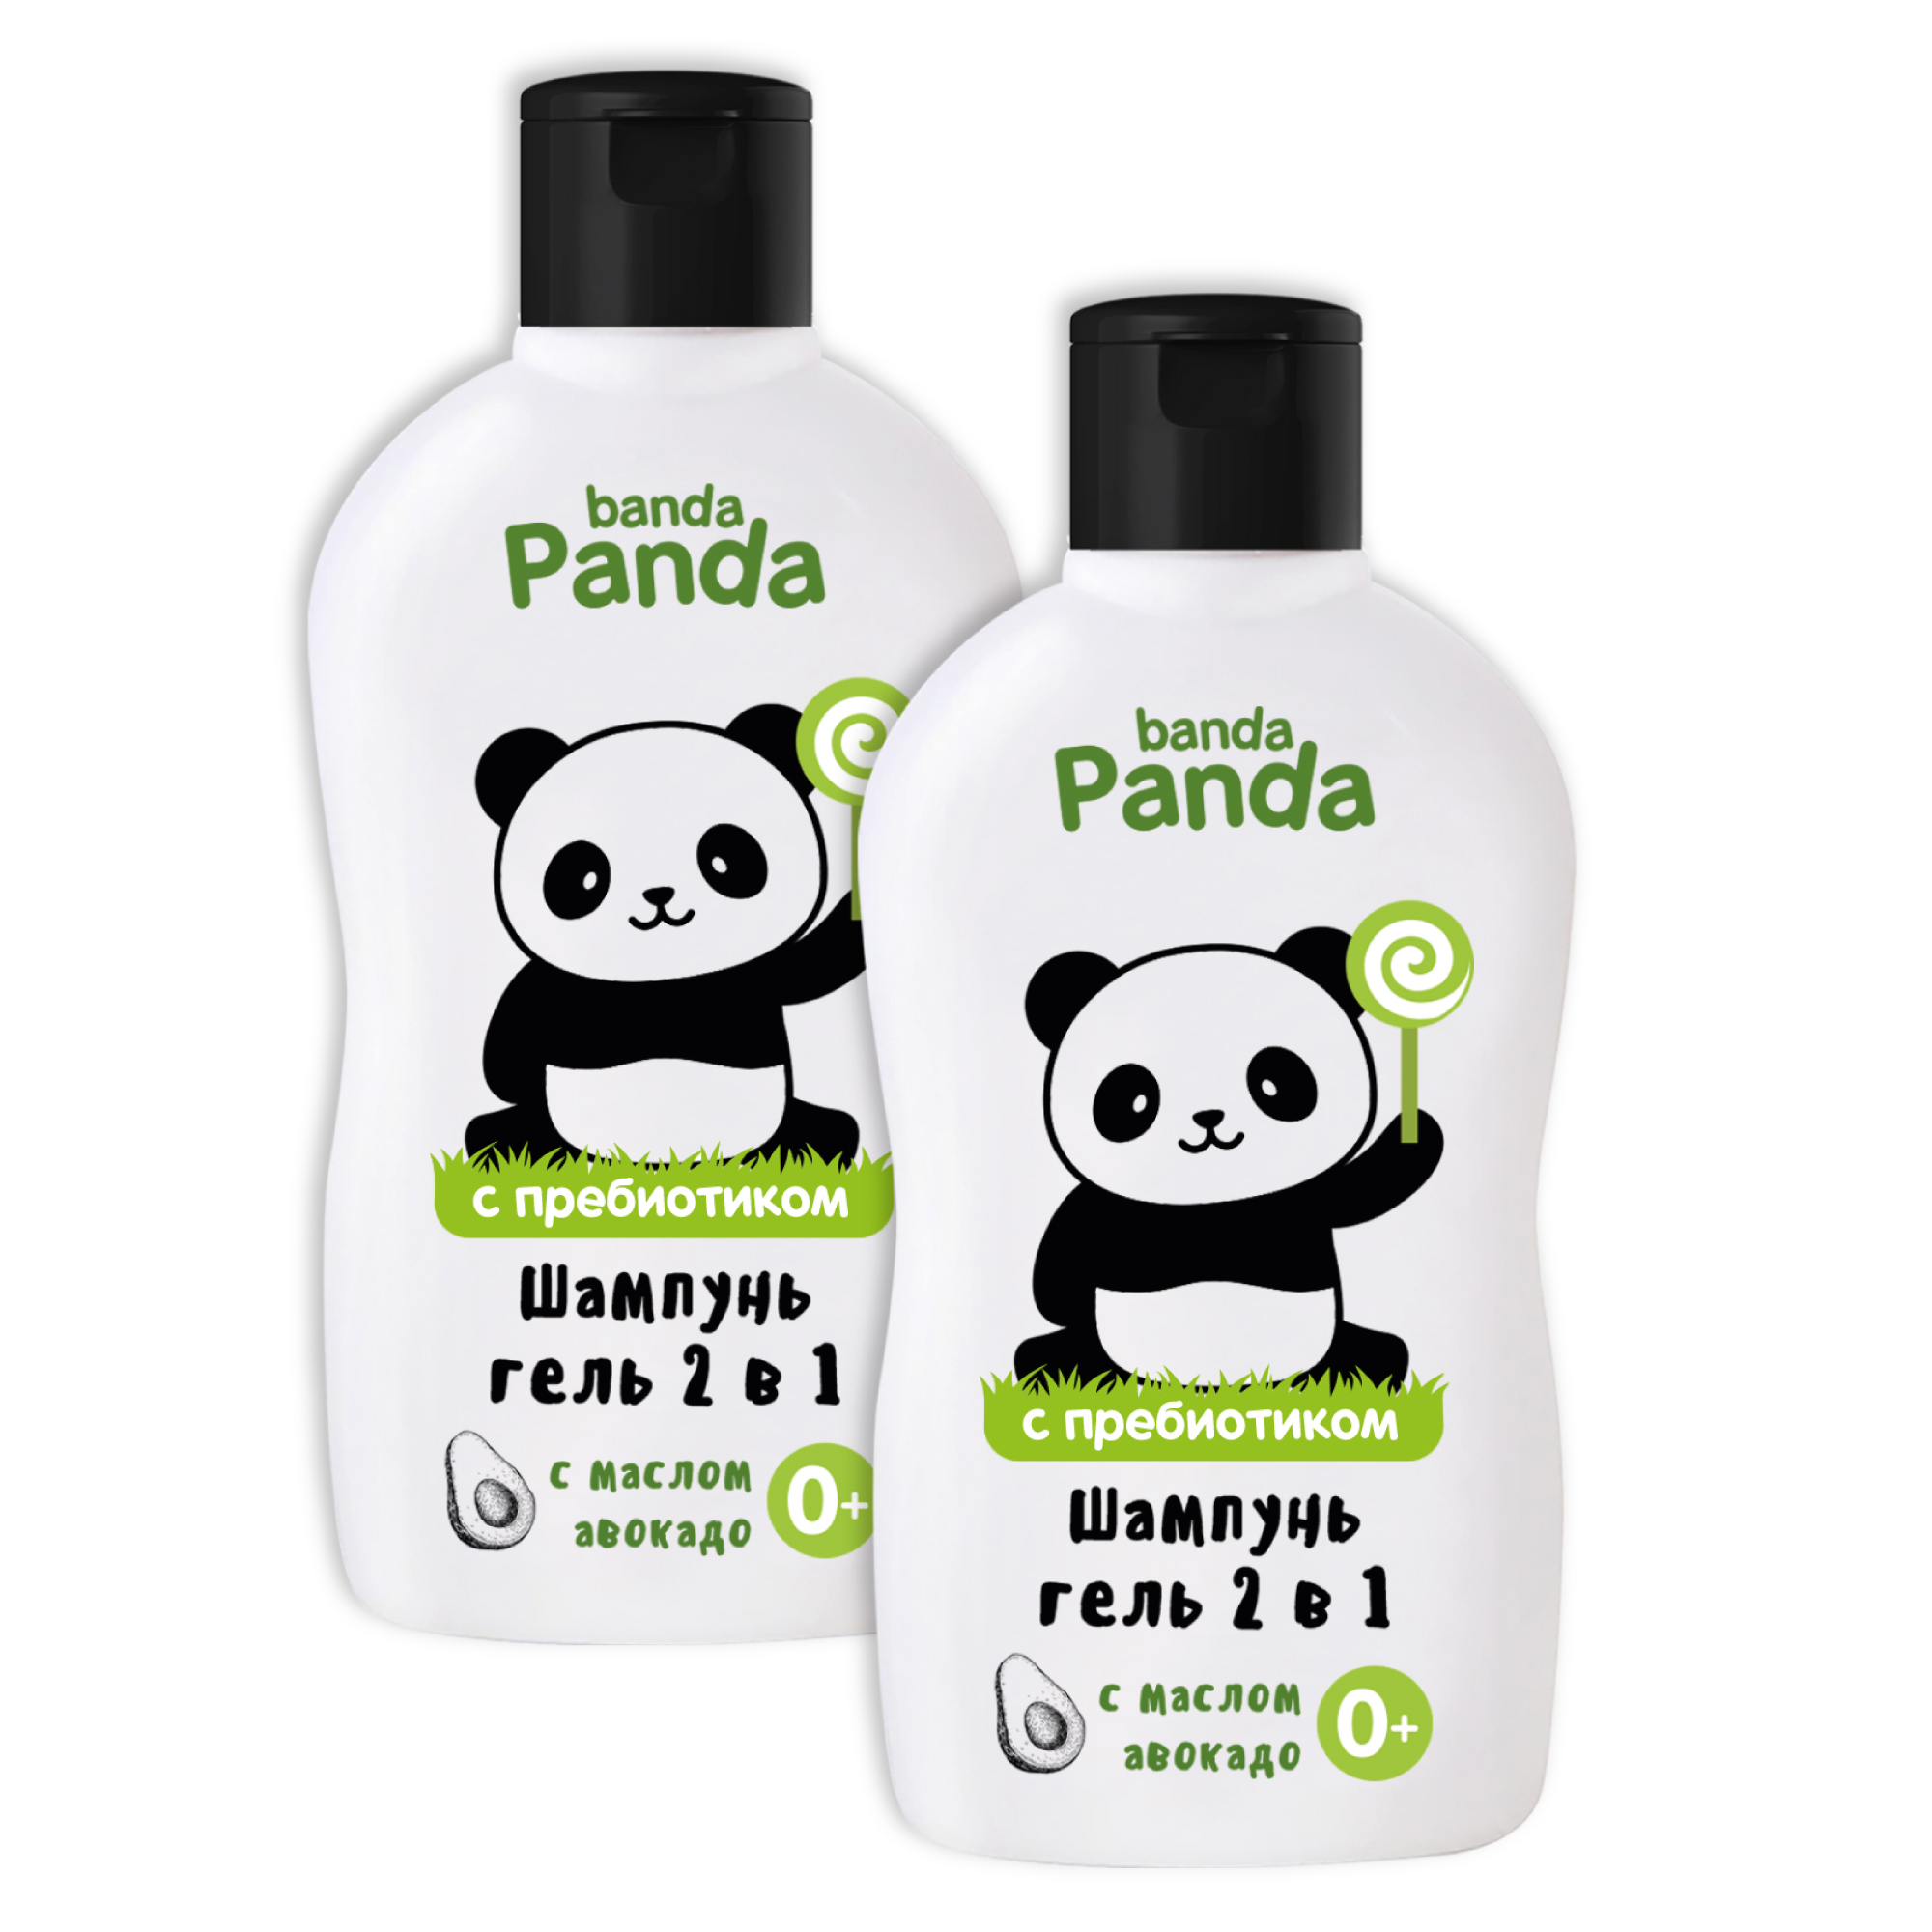 Набор с Пребиотиком banda Panda 2шт по 250мл Средство для купания и шампунь для волос 2в1 с маслом авокадо 0+ - фото 2